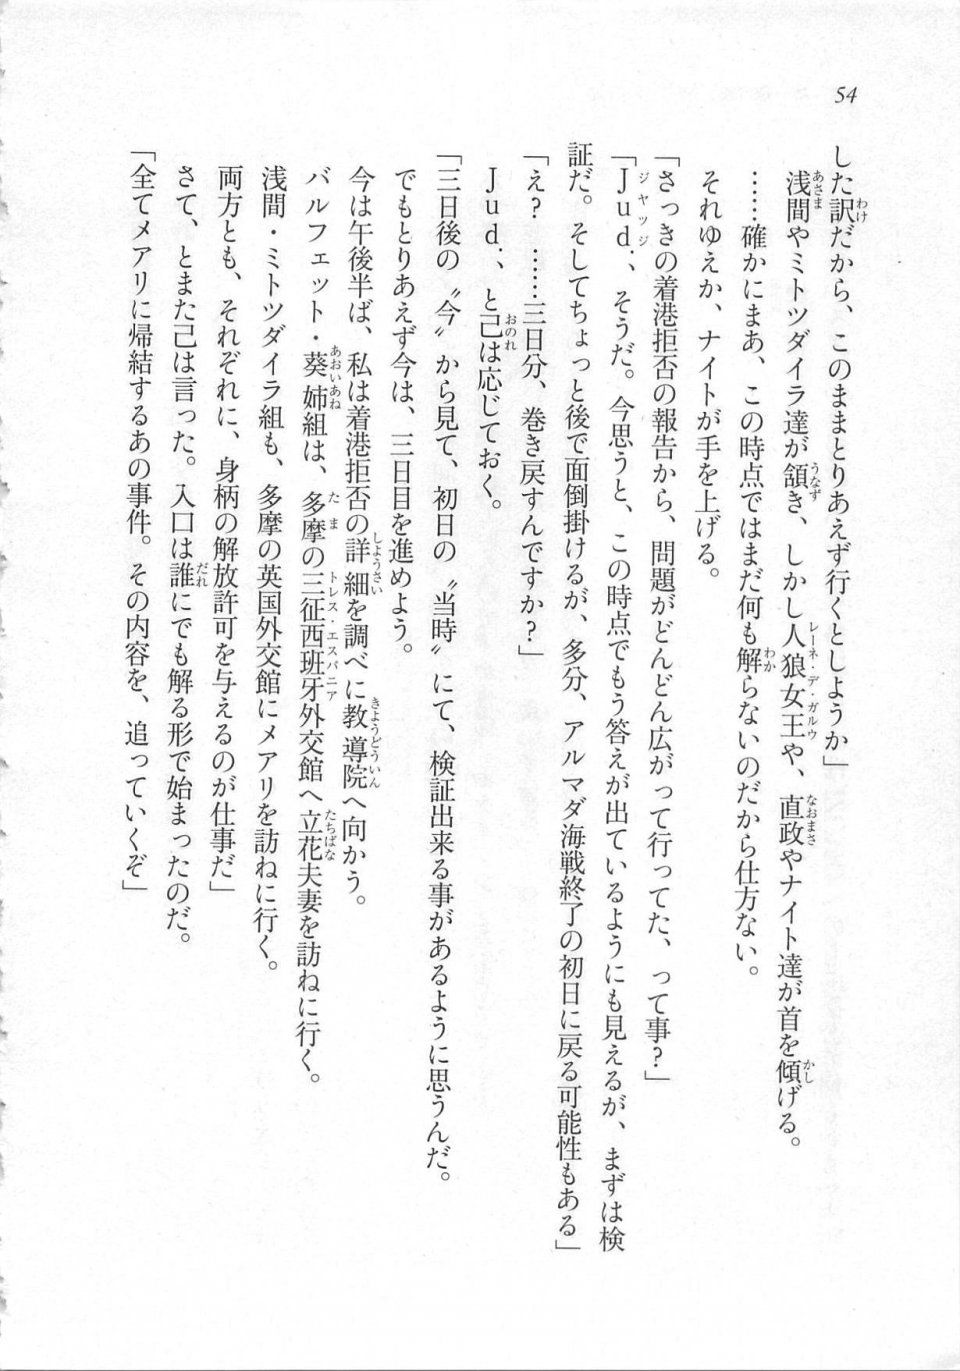 Kyoukai Senjou no Horizon LN Sidestory Vol 3 - Photo #58